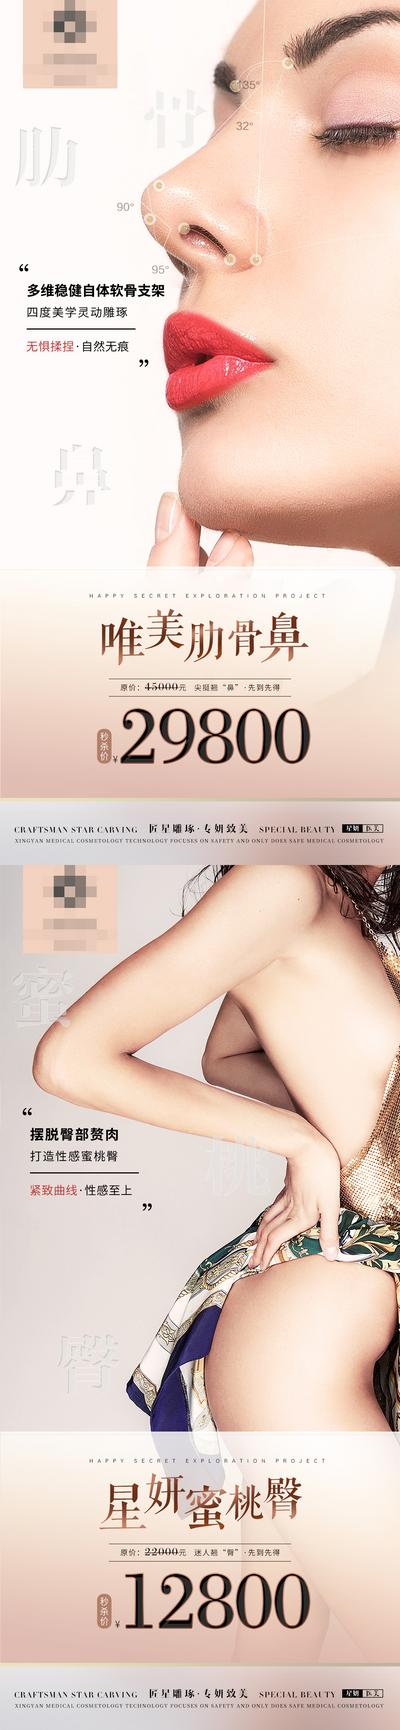 南门网 海报 医美 整形 促销 优惠 眼鼻 臀部 翘臀 模特 系列